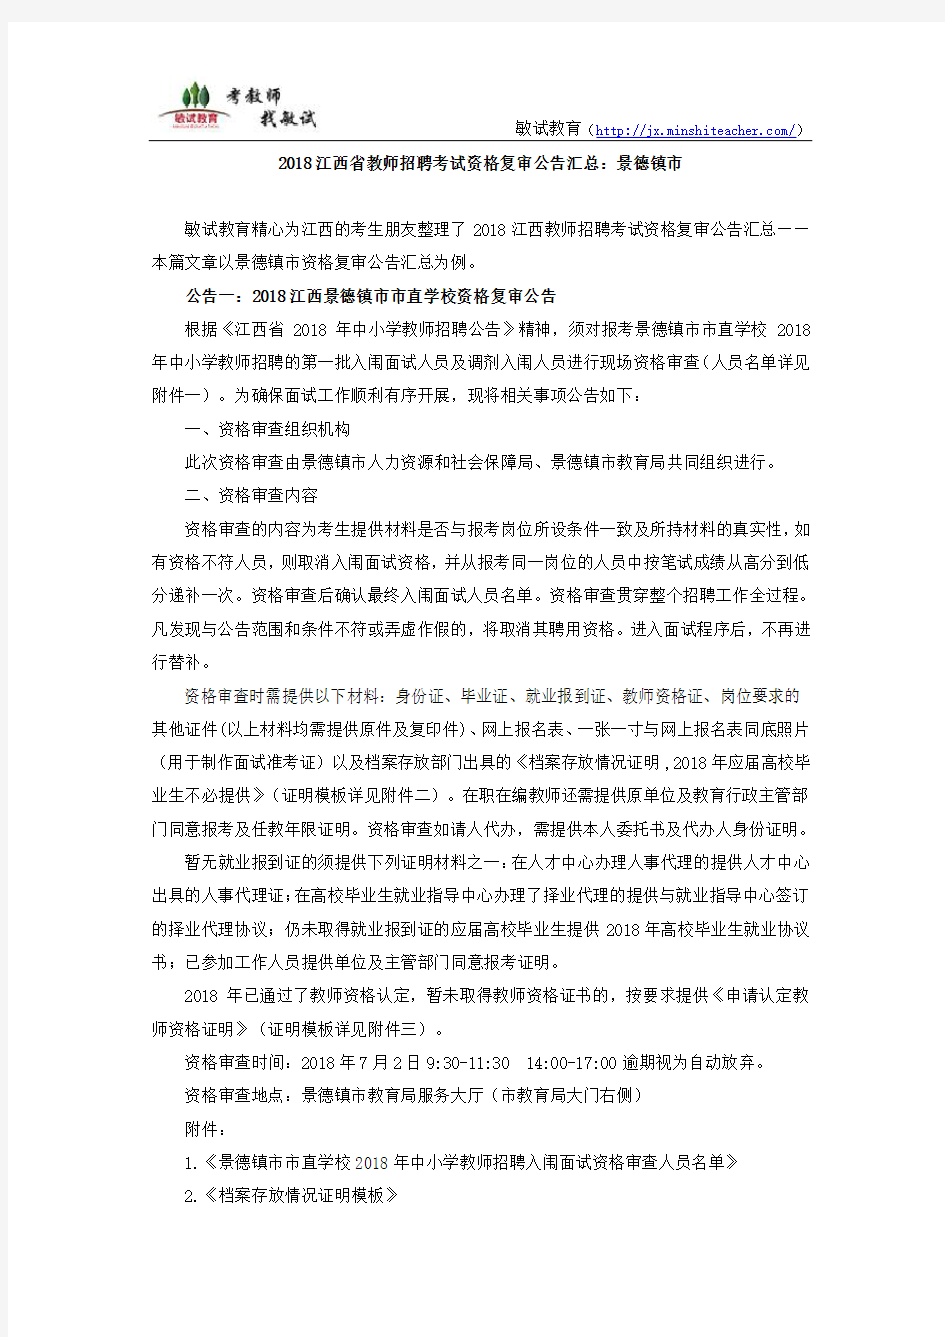 2018江西教师招聘考试资格复审公告：景德镇市